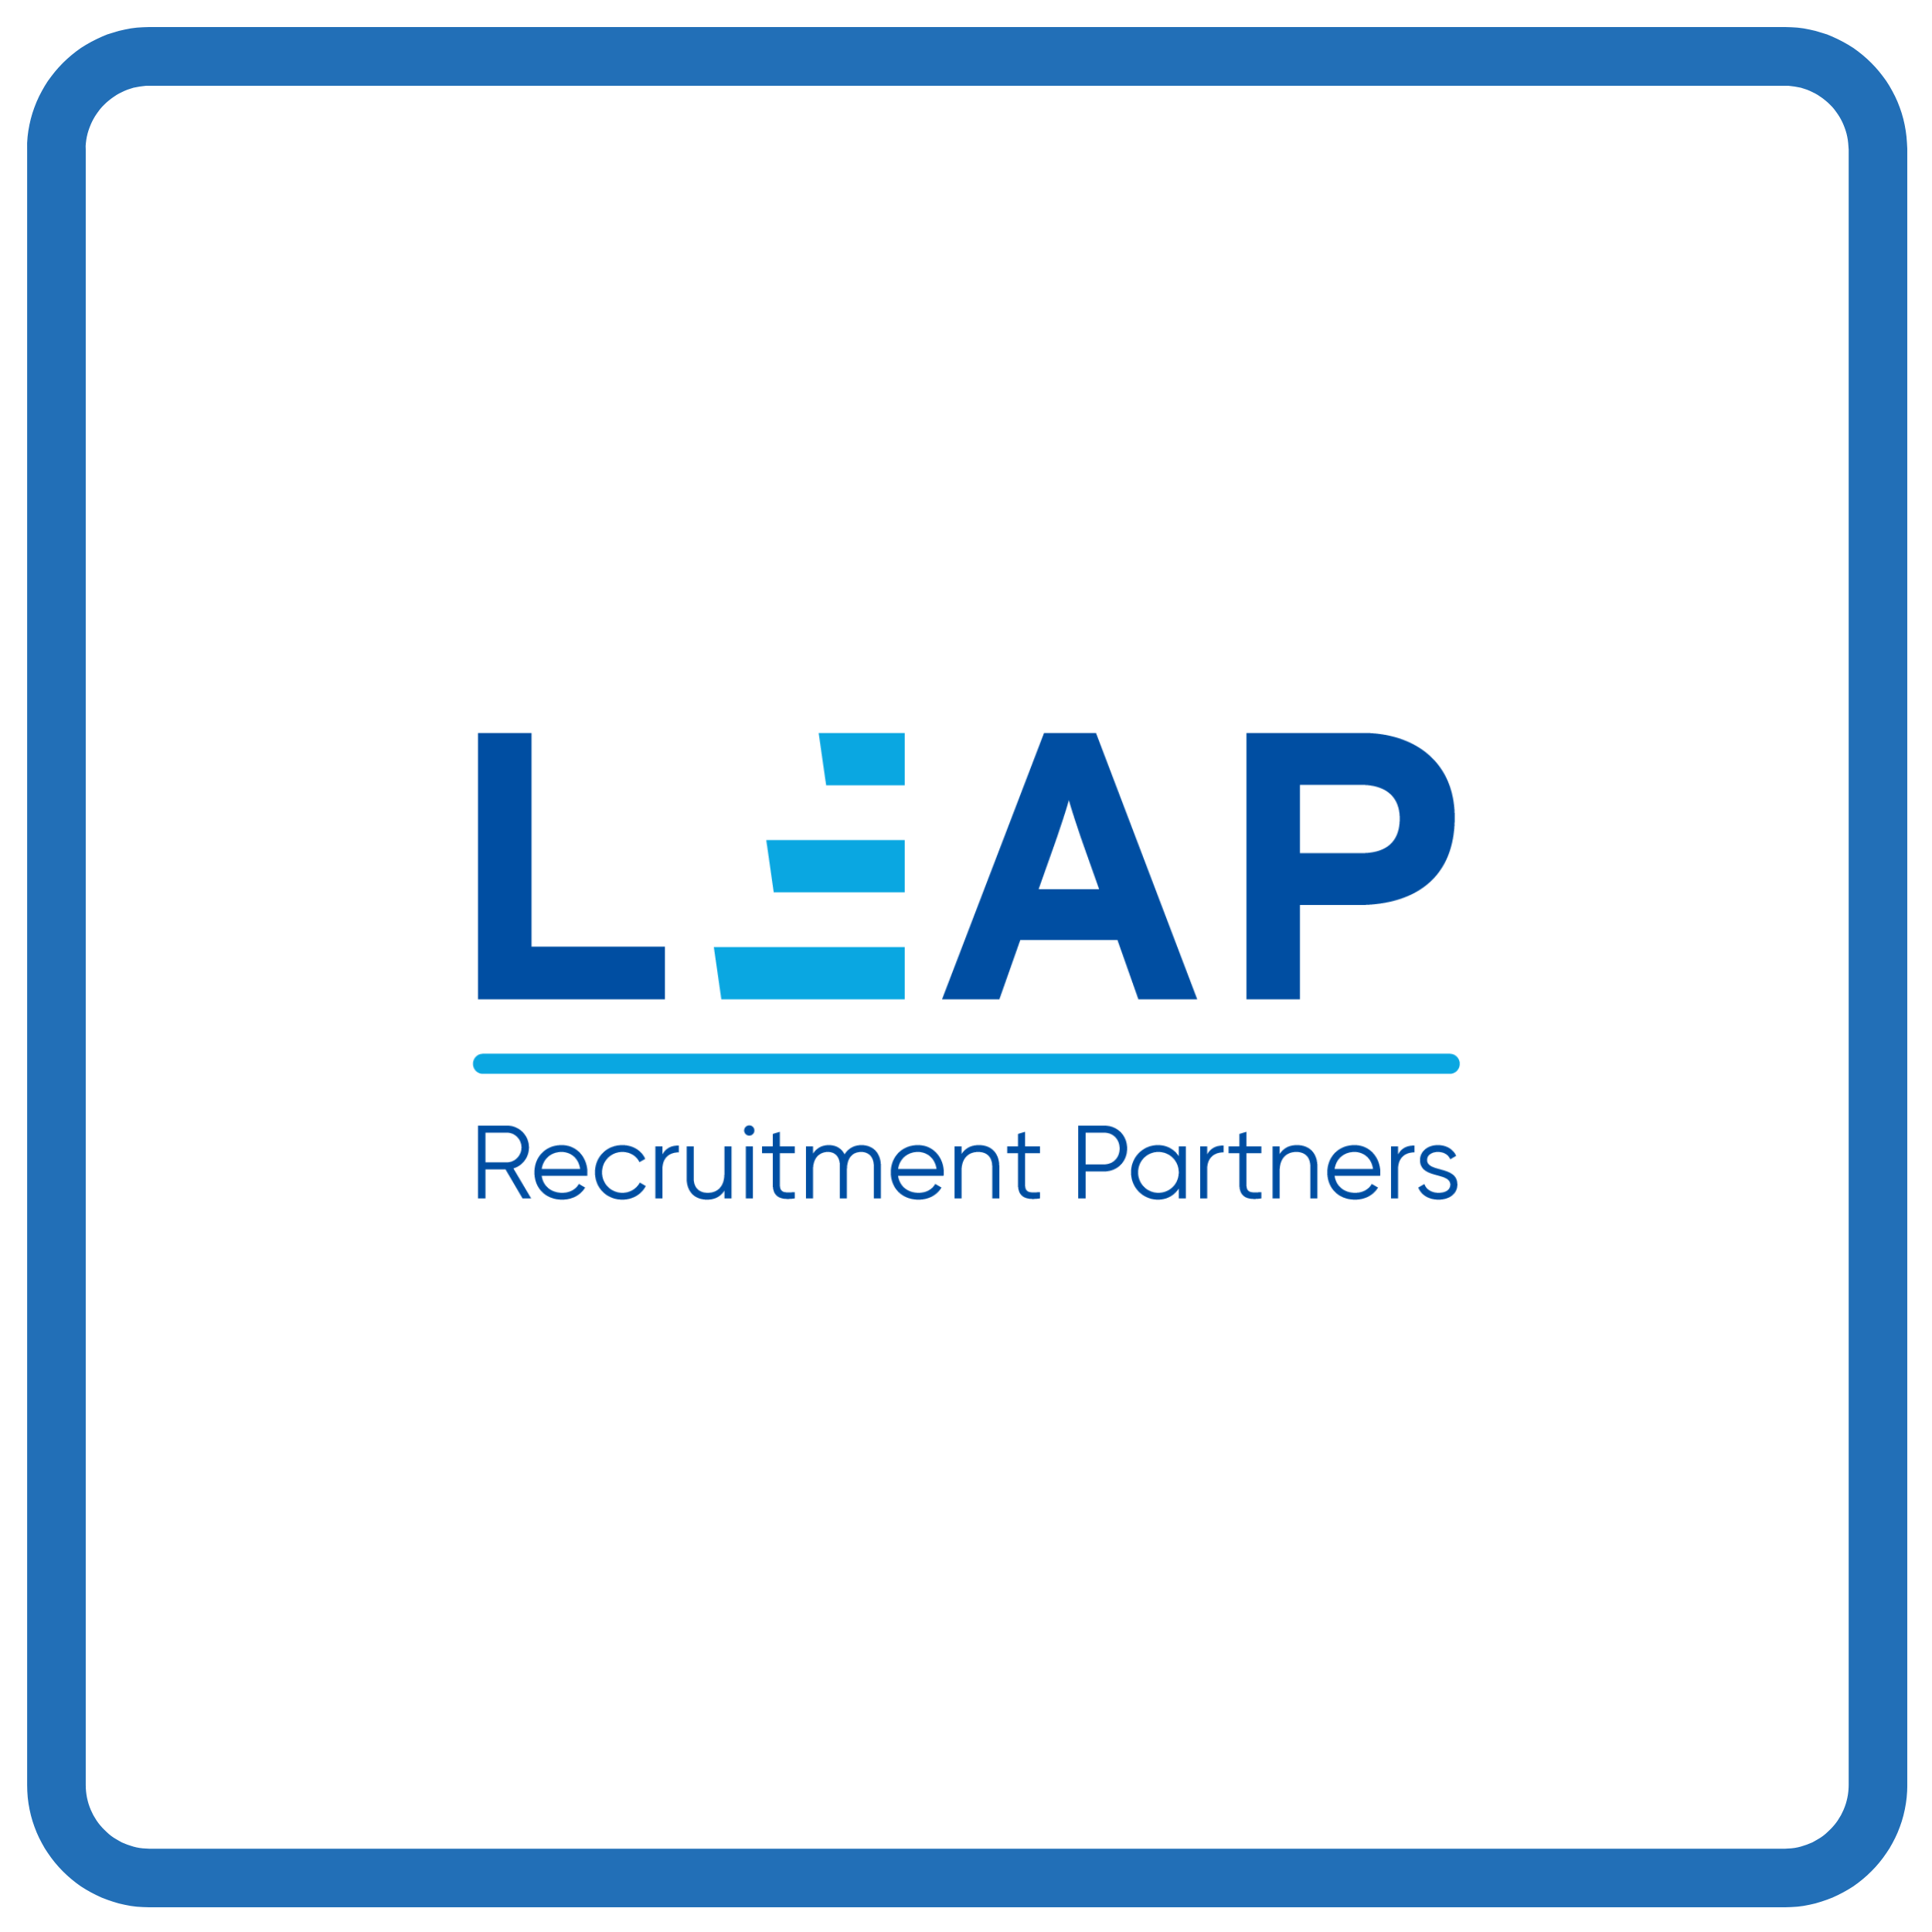 LEAP Recruitment Partners